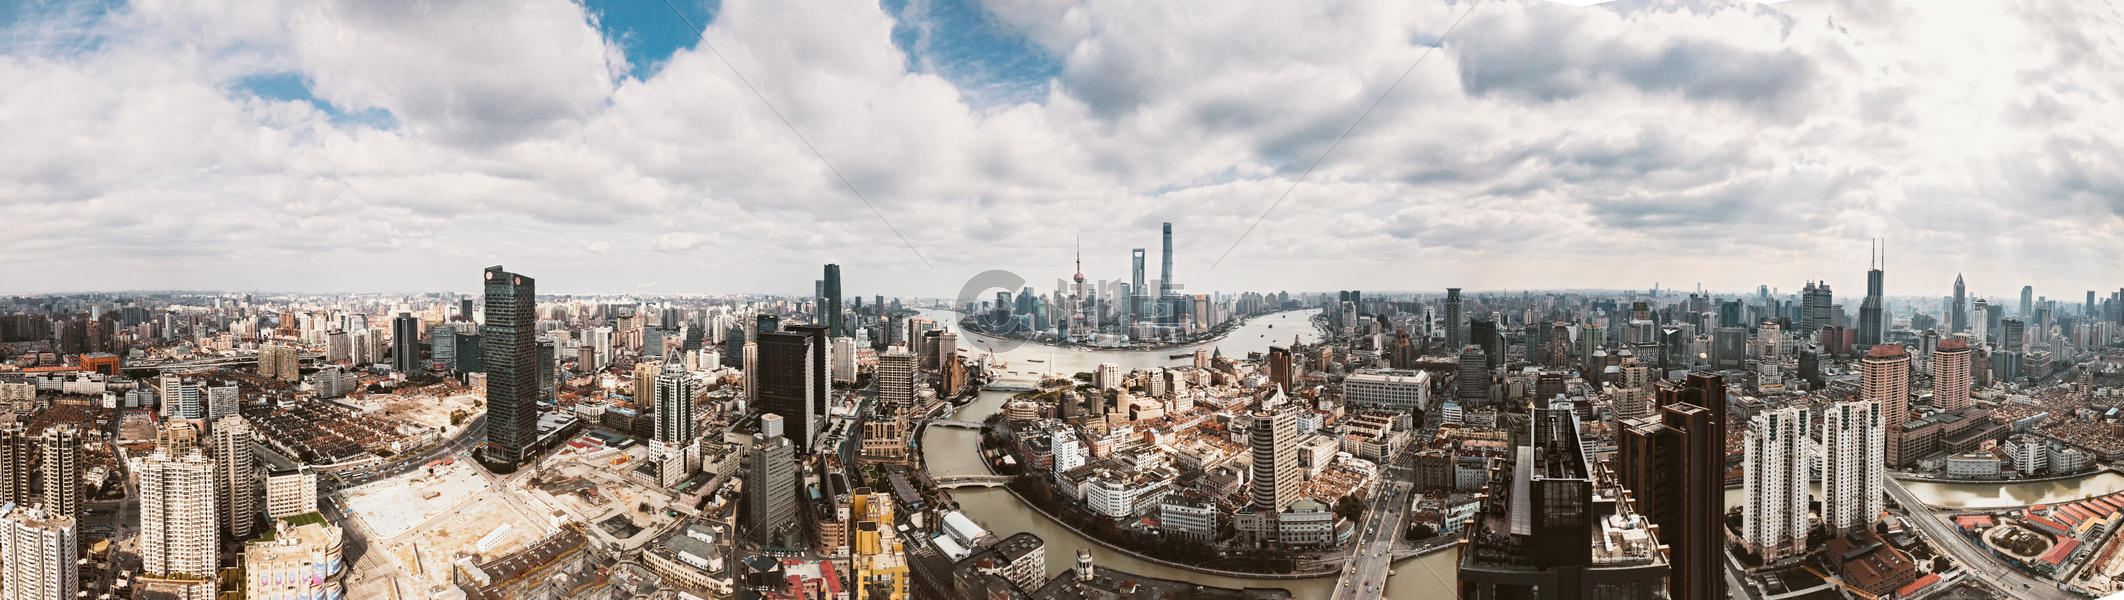 上海全景城市风光图片素材免费下载